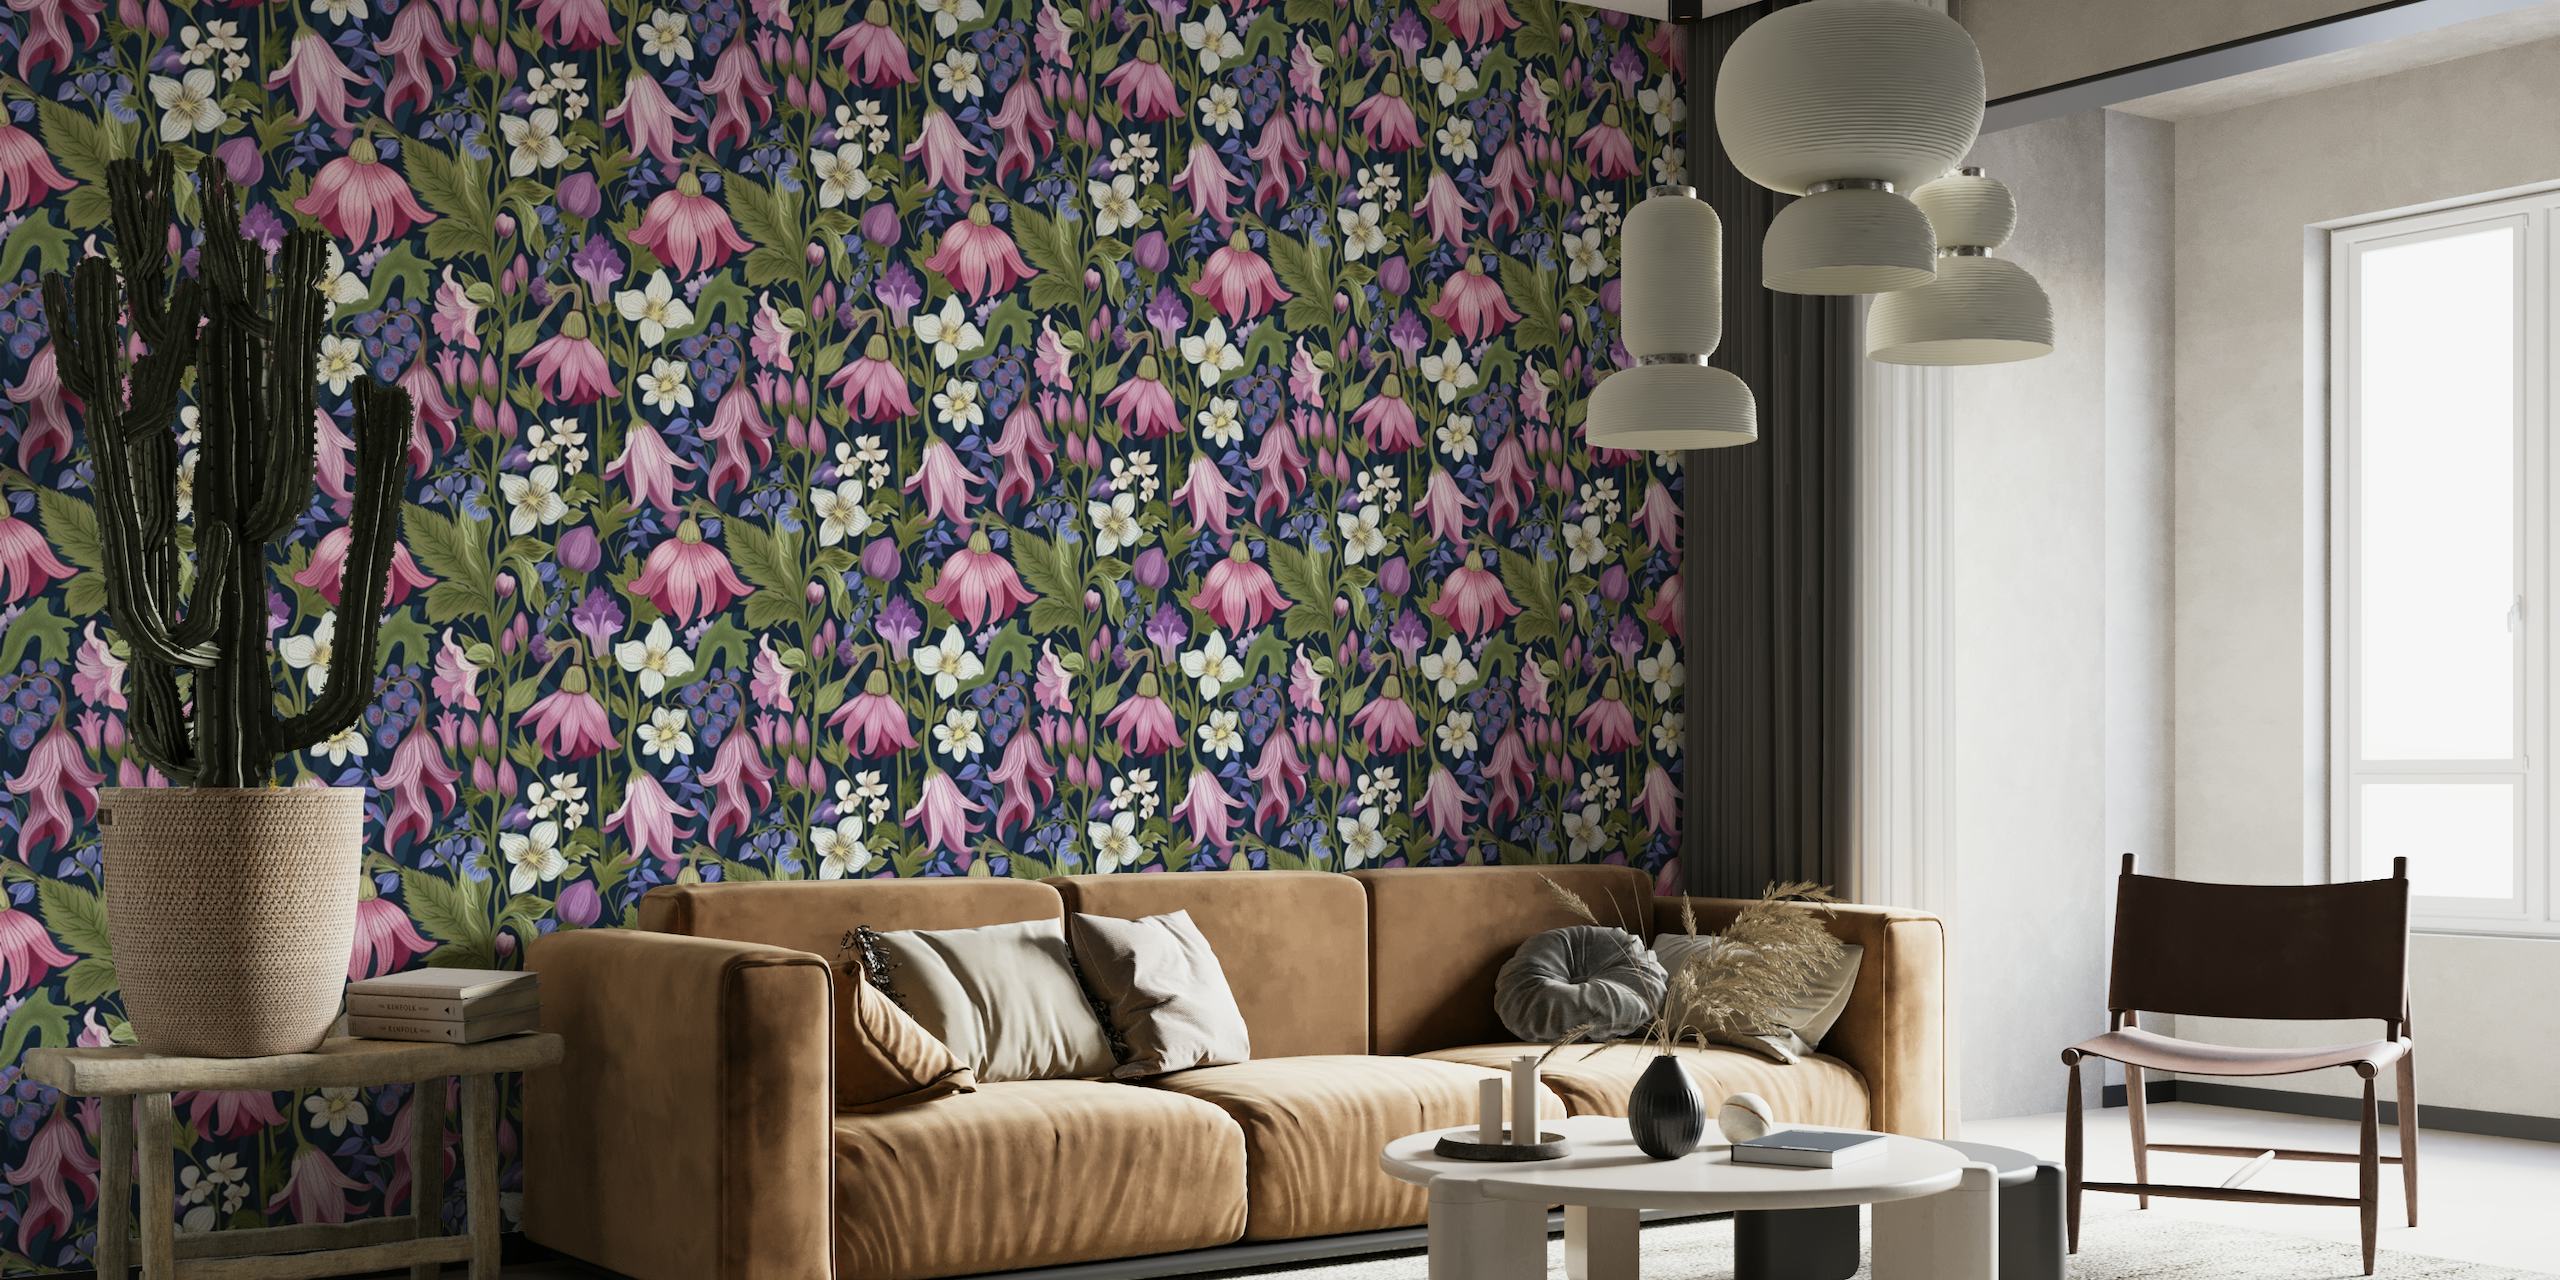 Tyylikäs kasvitieteellinen seinämaalaus, jossa on vehreitä kukkakuvia vaaleanpunaisina, purppuraina ja valkoisina syvän sinisellä taustalla